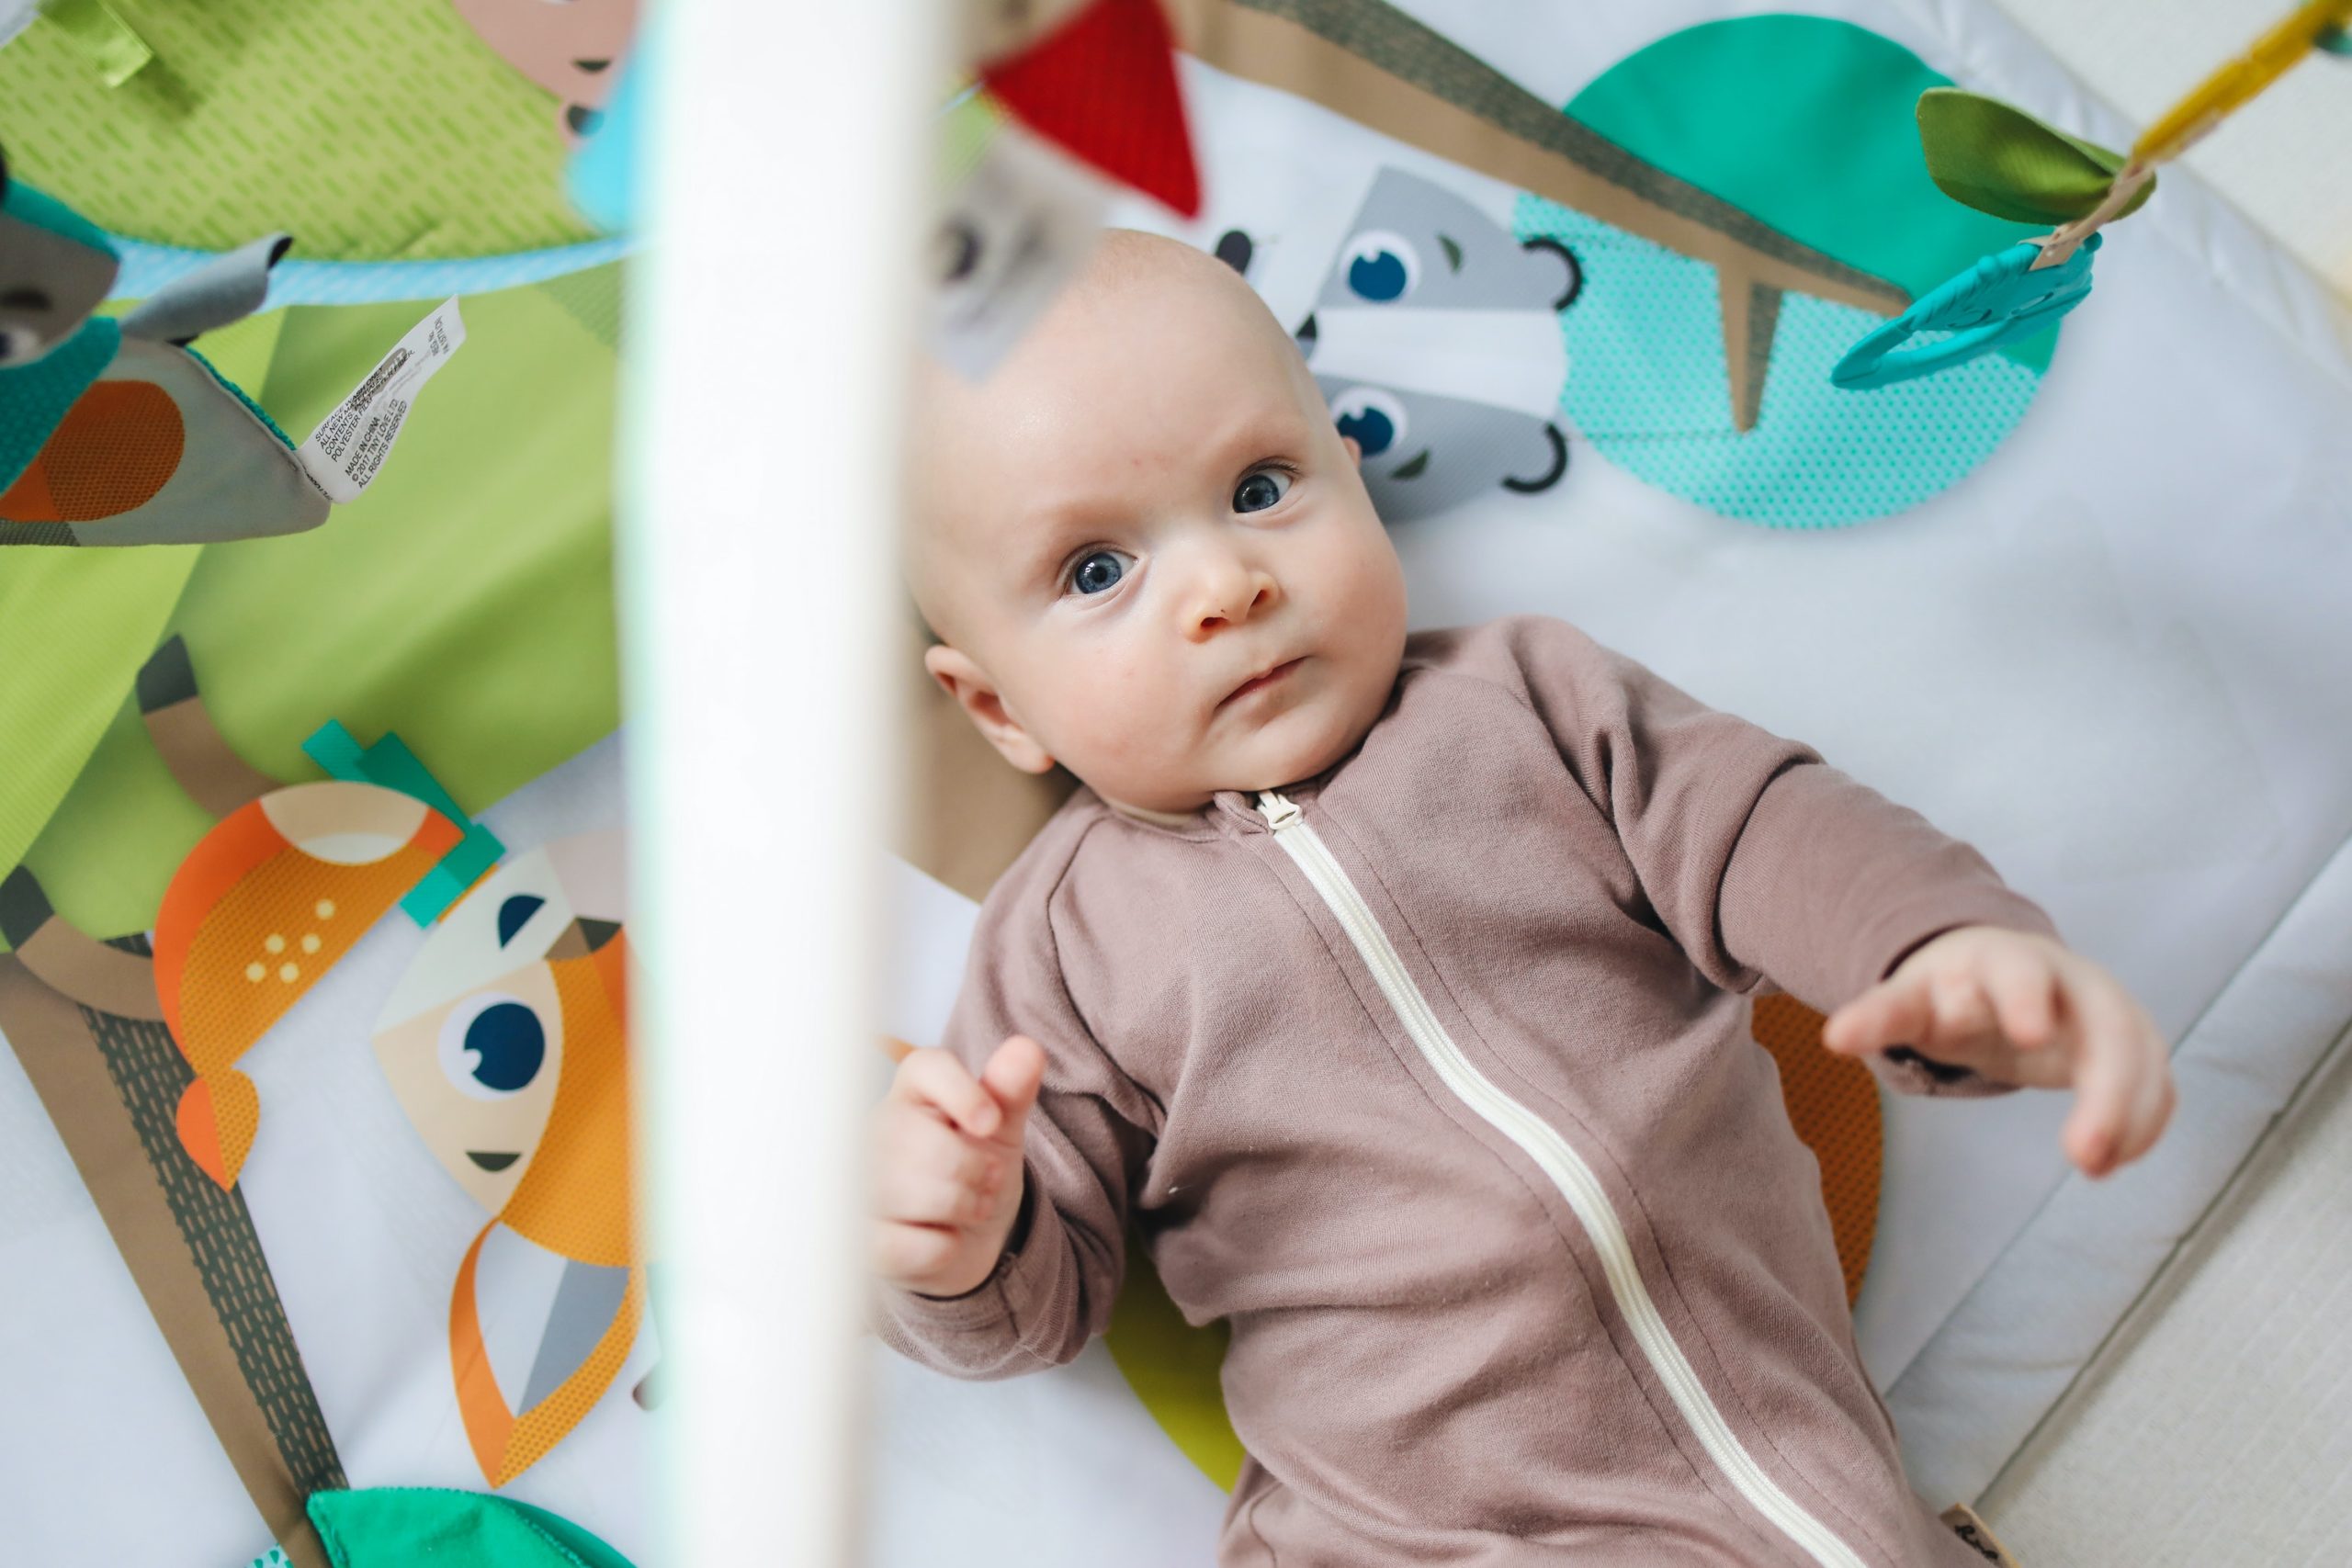 Zabawki sensoryczne dla niemowląt - jakie wybrać?